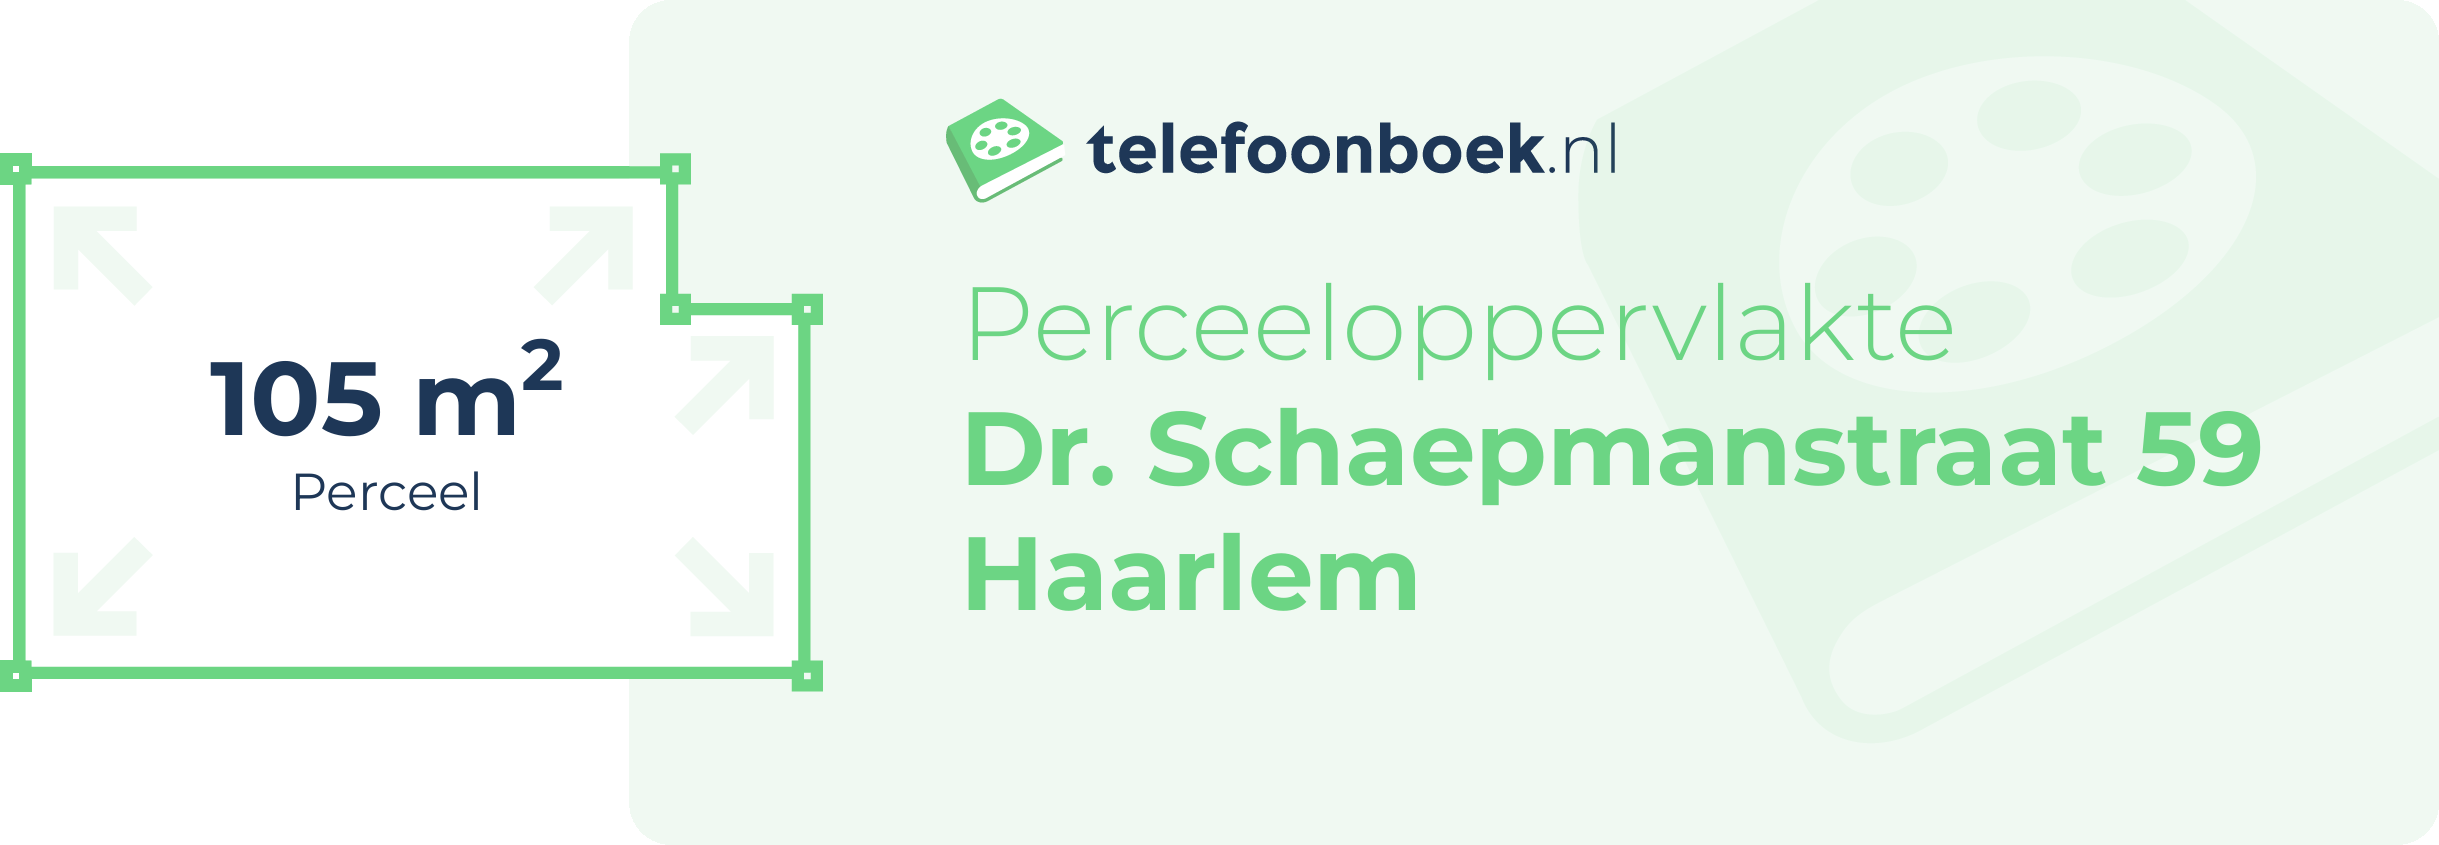 Perceeloppervlakte Dr. Schaepmanstraat 59 Haarlem